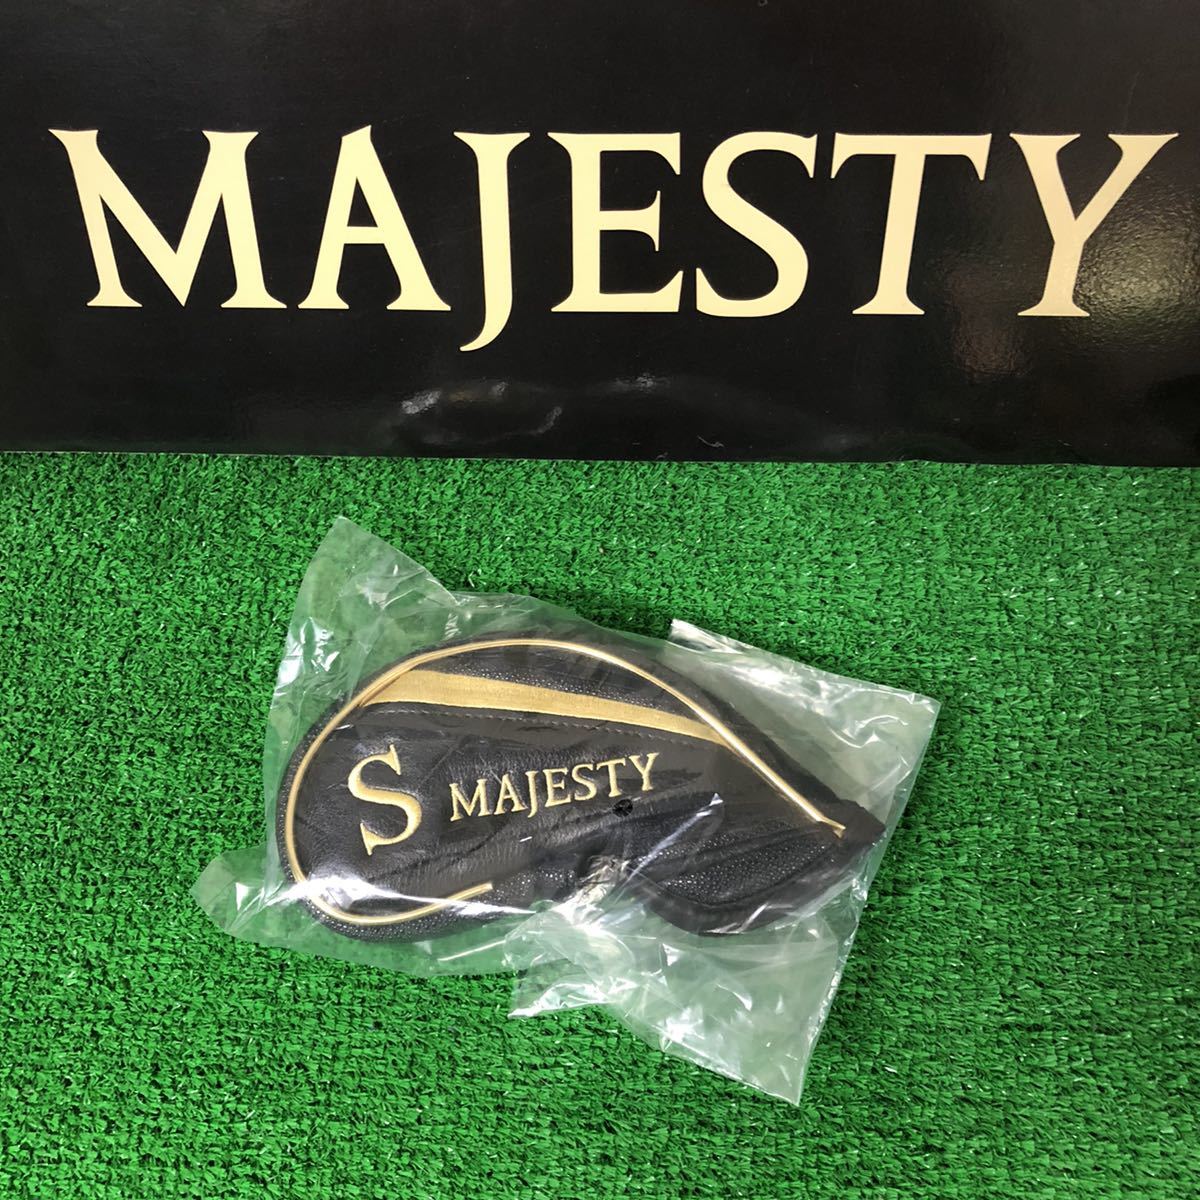  есть перевод не использовался Majesty PlayStation geo 12 одиночный товар SW Majesty Golf S вал Majesty PlayStation geo бесплатная доставка 